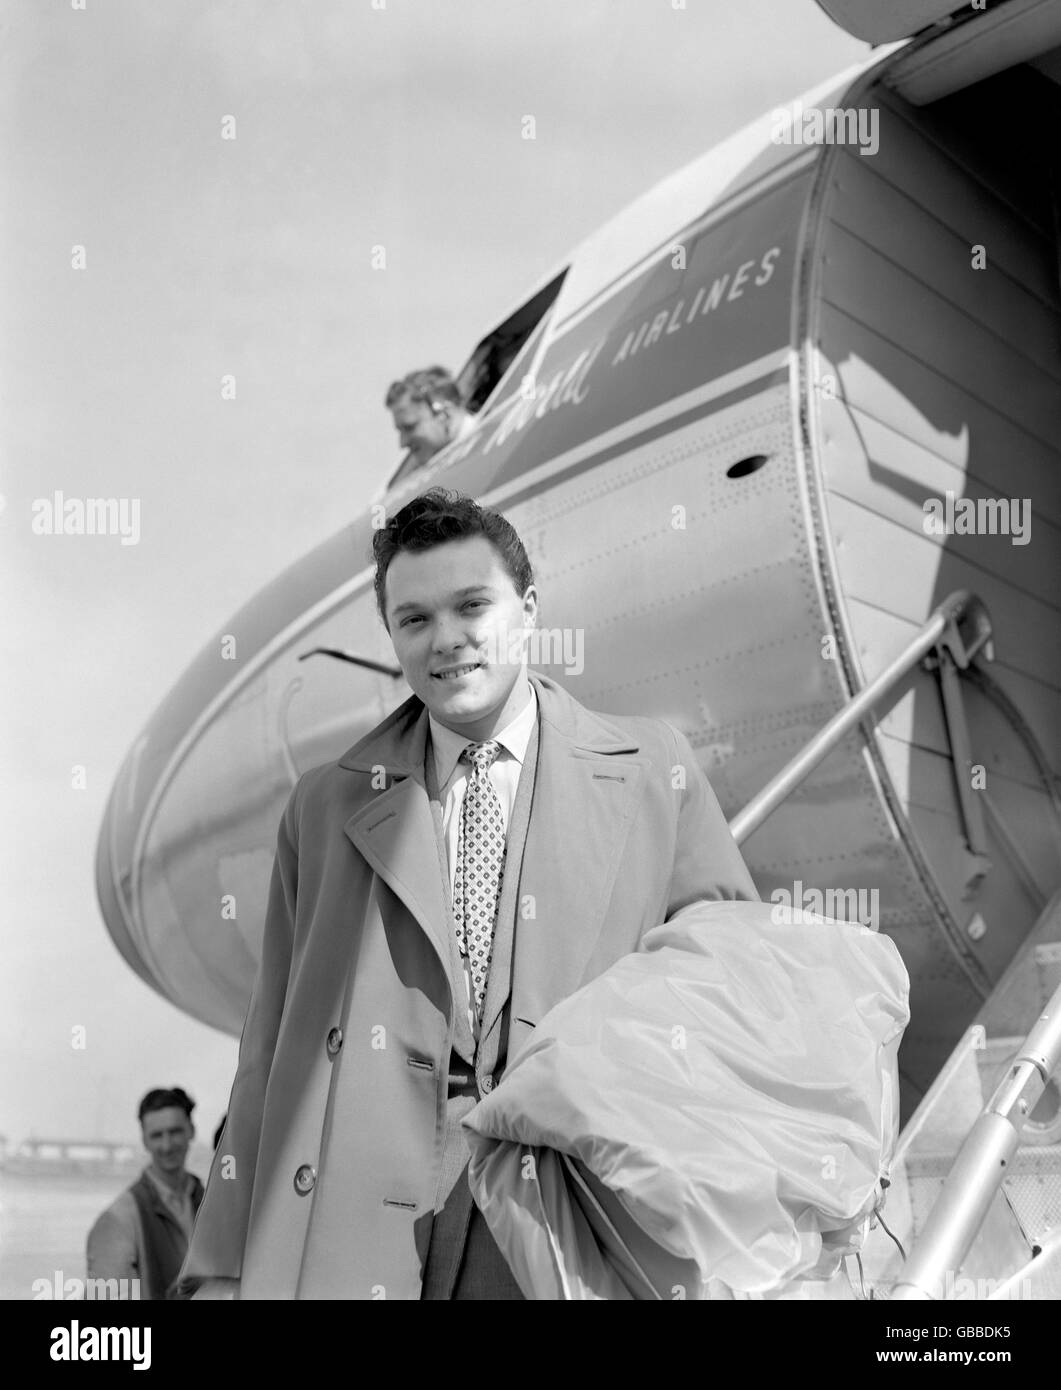 Musique - Dickie Valentine - 1957.Le chanteur britannique Dickie Valentine à l'aéroport de Londres alors qu'il embarque à bord d'un avion Sabena pour Anvers. Banque D'Images